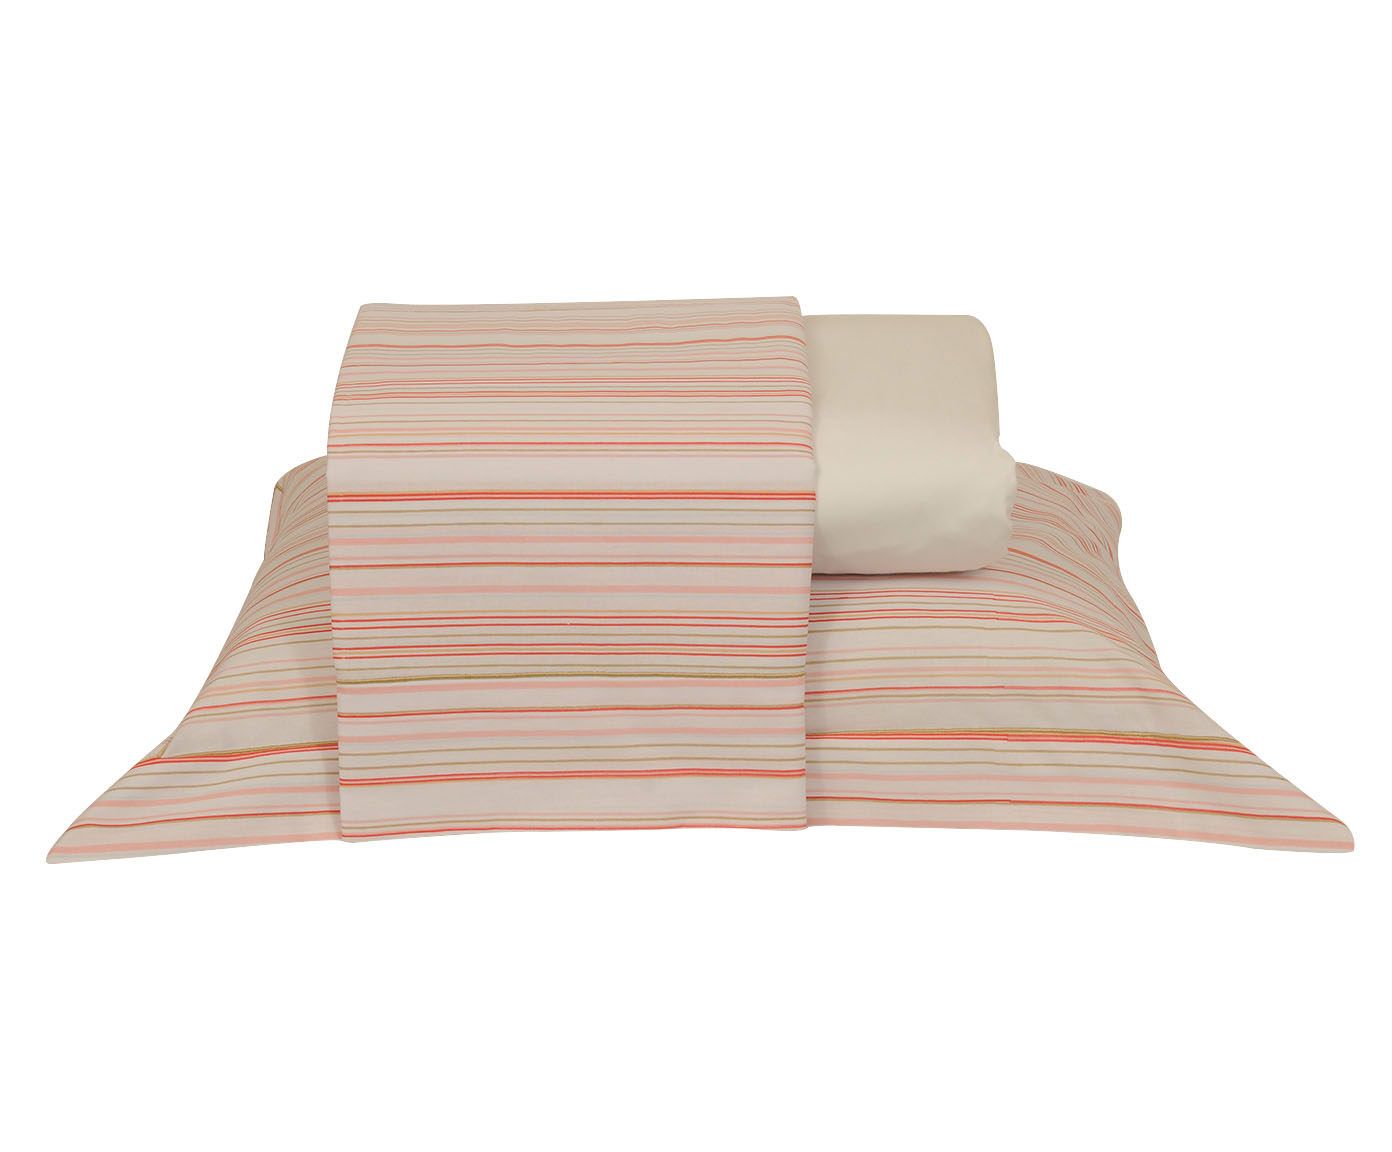 Jogo de lençol versatt p/ cama de solteiro 150 fios - ritz | Westwing.com.br